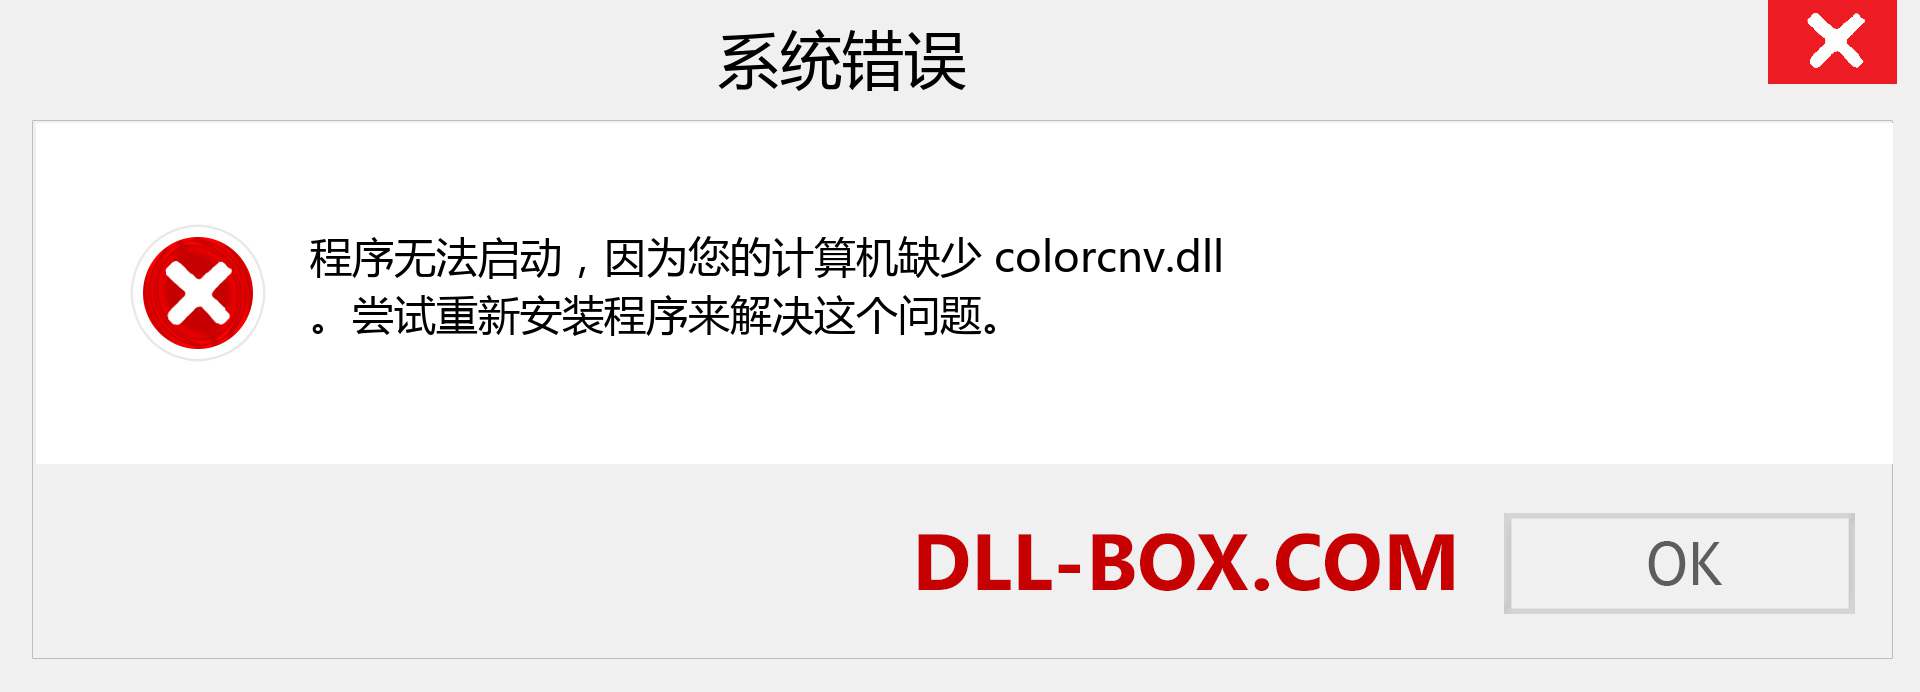 colorcnv.dll 文件丢失？。 适用于 Windows 7、8、10 的下载 - 修复 Windows、照片、图像上的 colorcnv dll 丢失错误